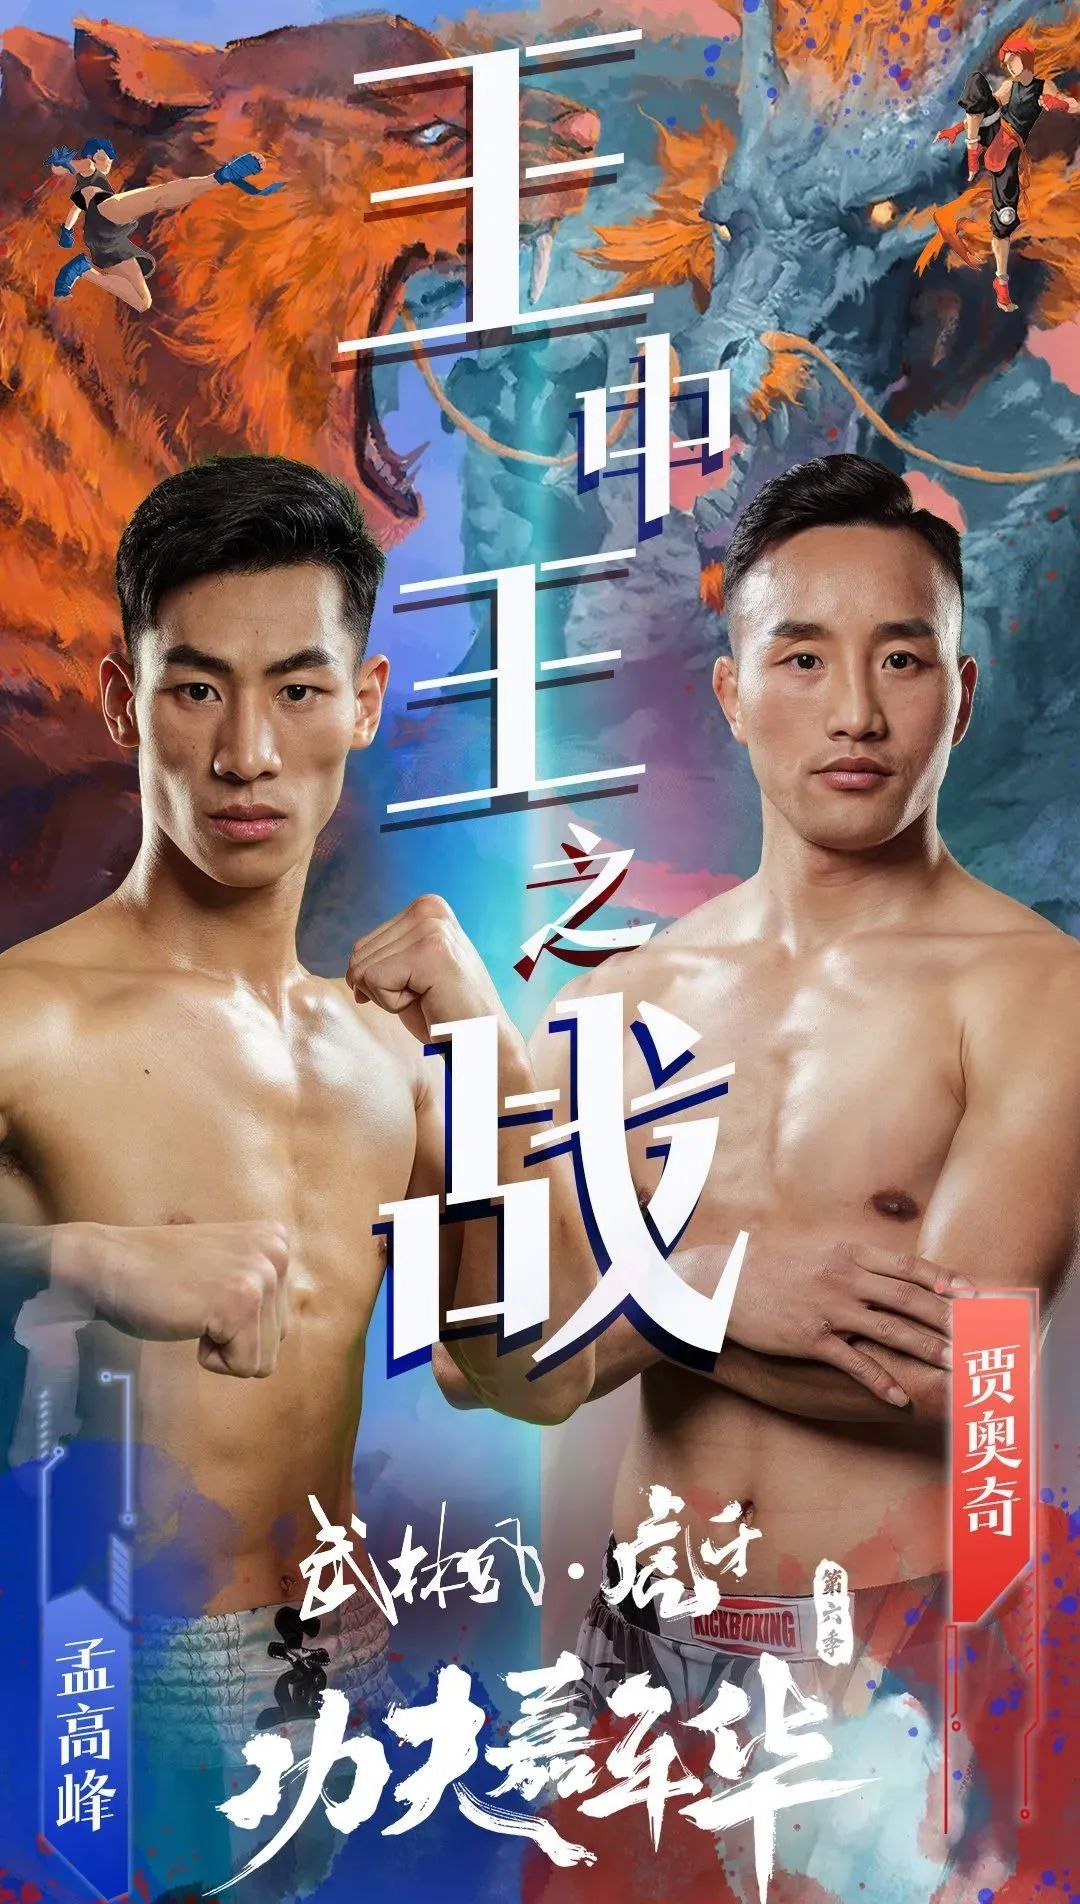 当今踢拳排名最高的中国拳手，自信能击败秋元皓贵